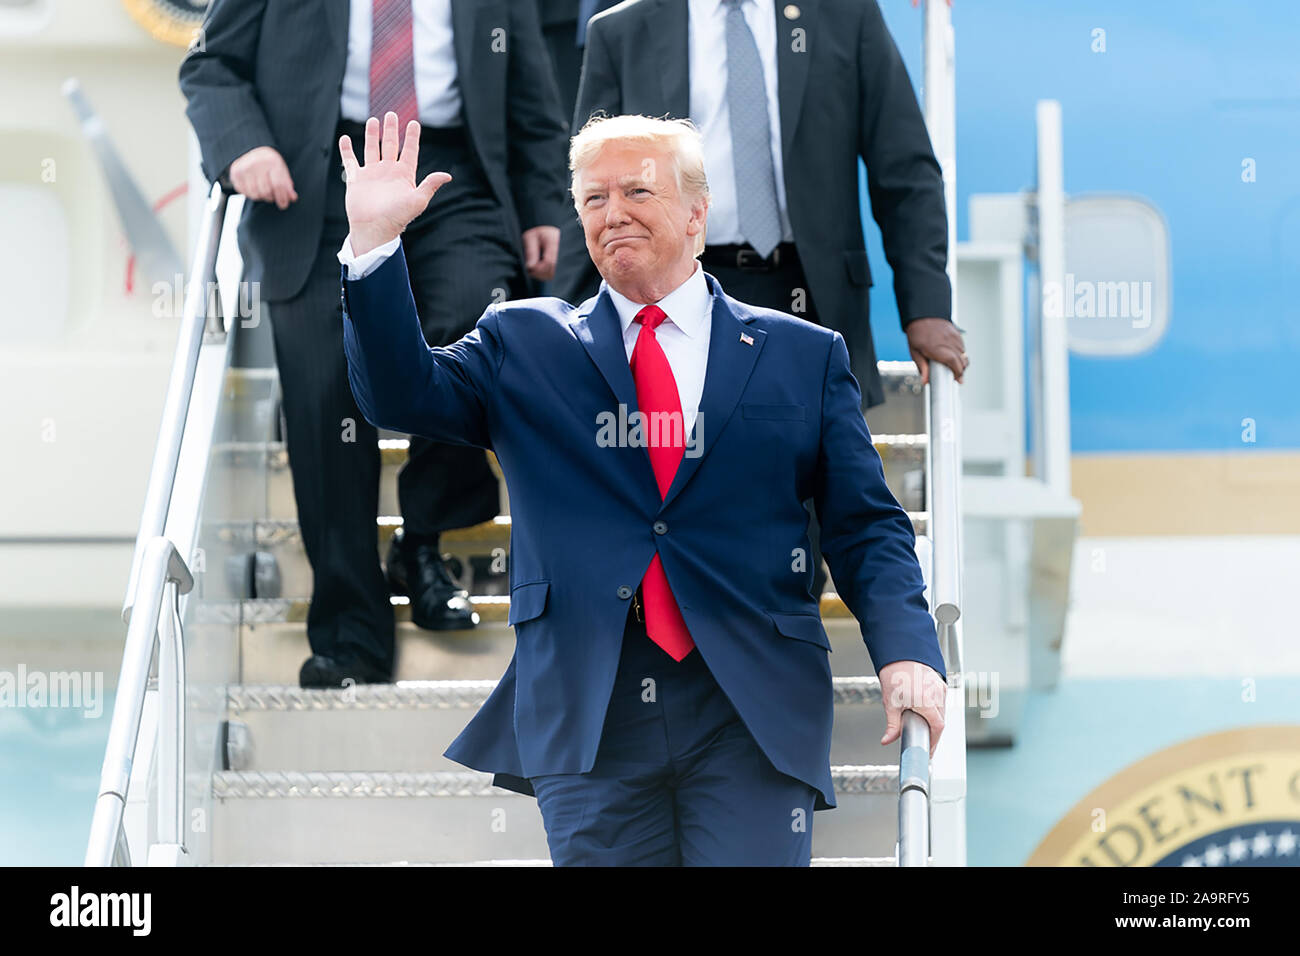 Presidente Trump approda Air Force One presso la Columbia Metropolitan Airport in Columbia, S.C. Venerdì, 25 ottobre 2019, come egli è stato accolto favorevolmente dagli enti locali e funzionari statali. Foto Stock